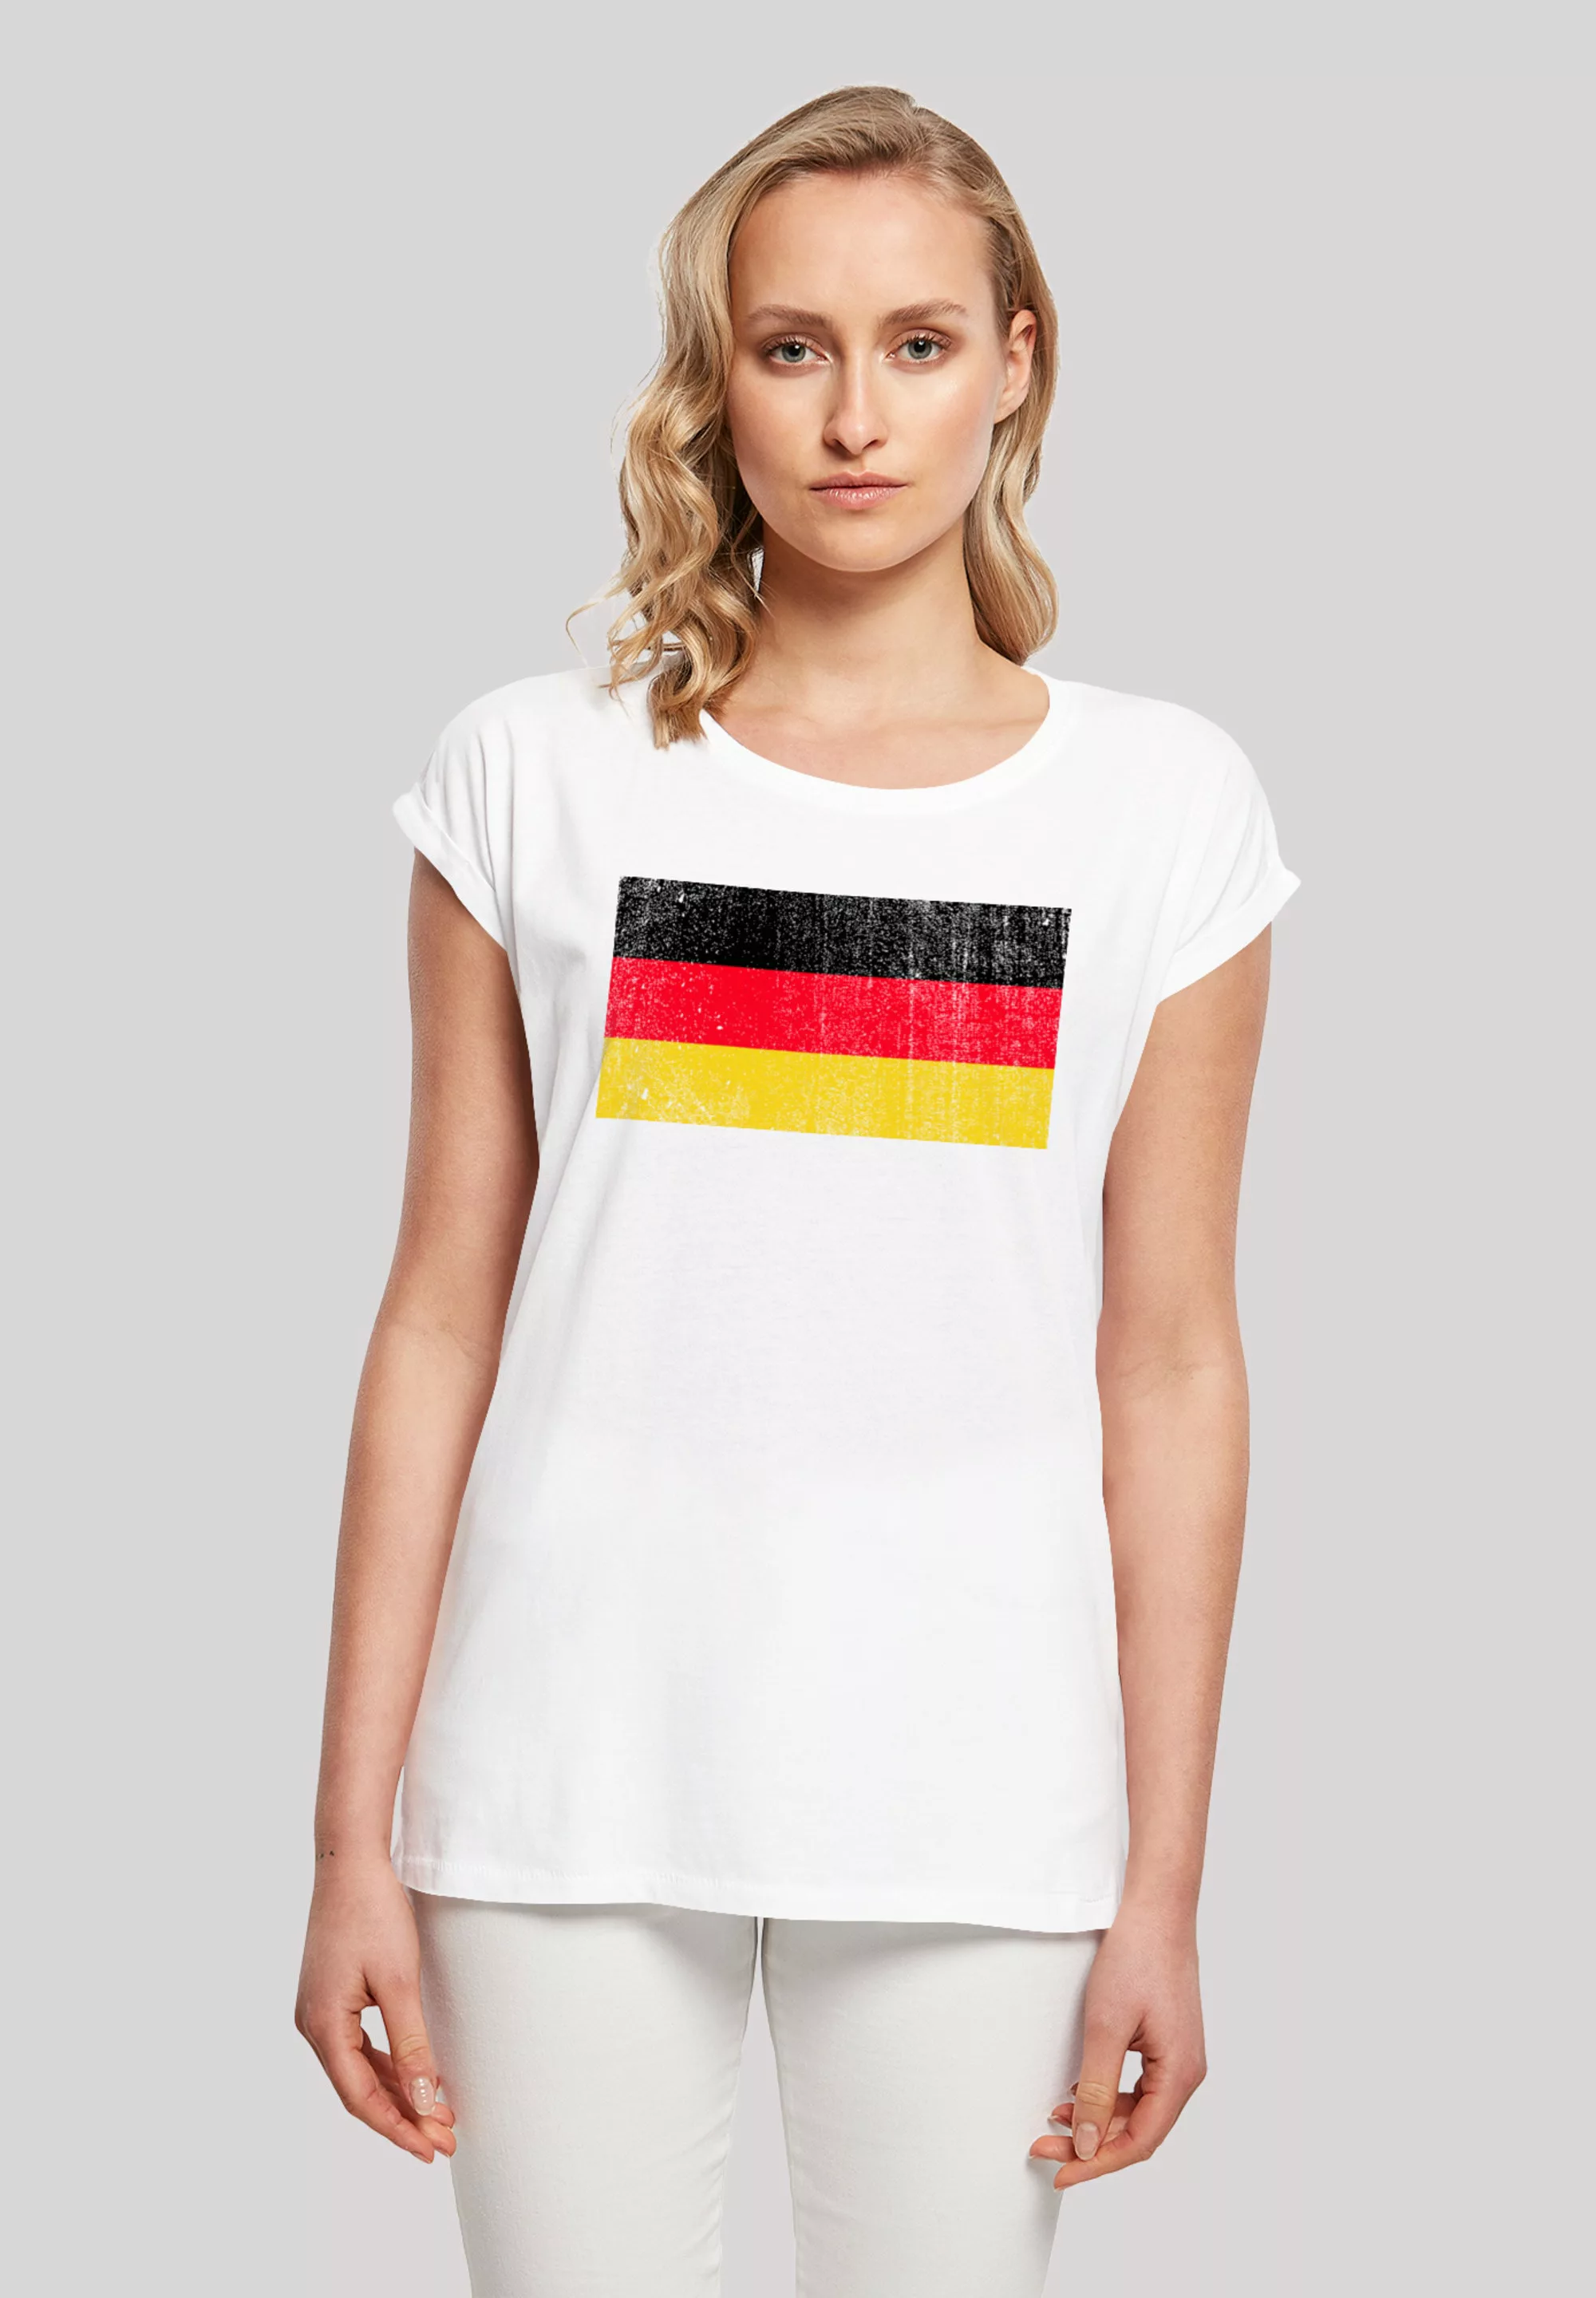 F4NT4STIC T-Shirt "Germany Deutschland Flagge distressed", Print günstig online kaufen